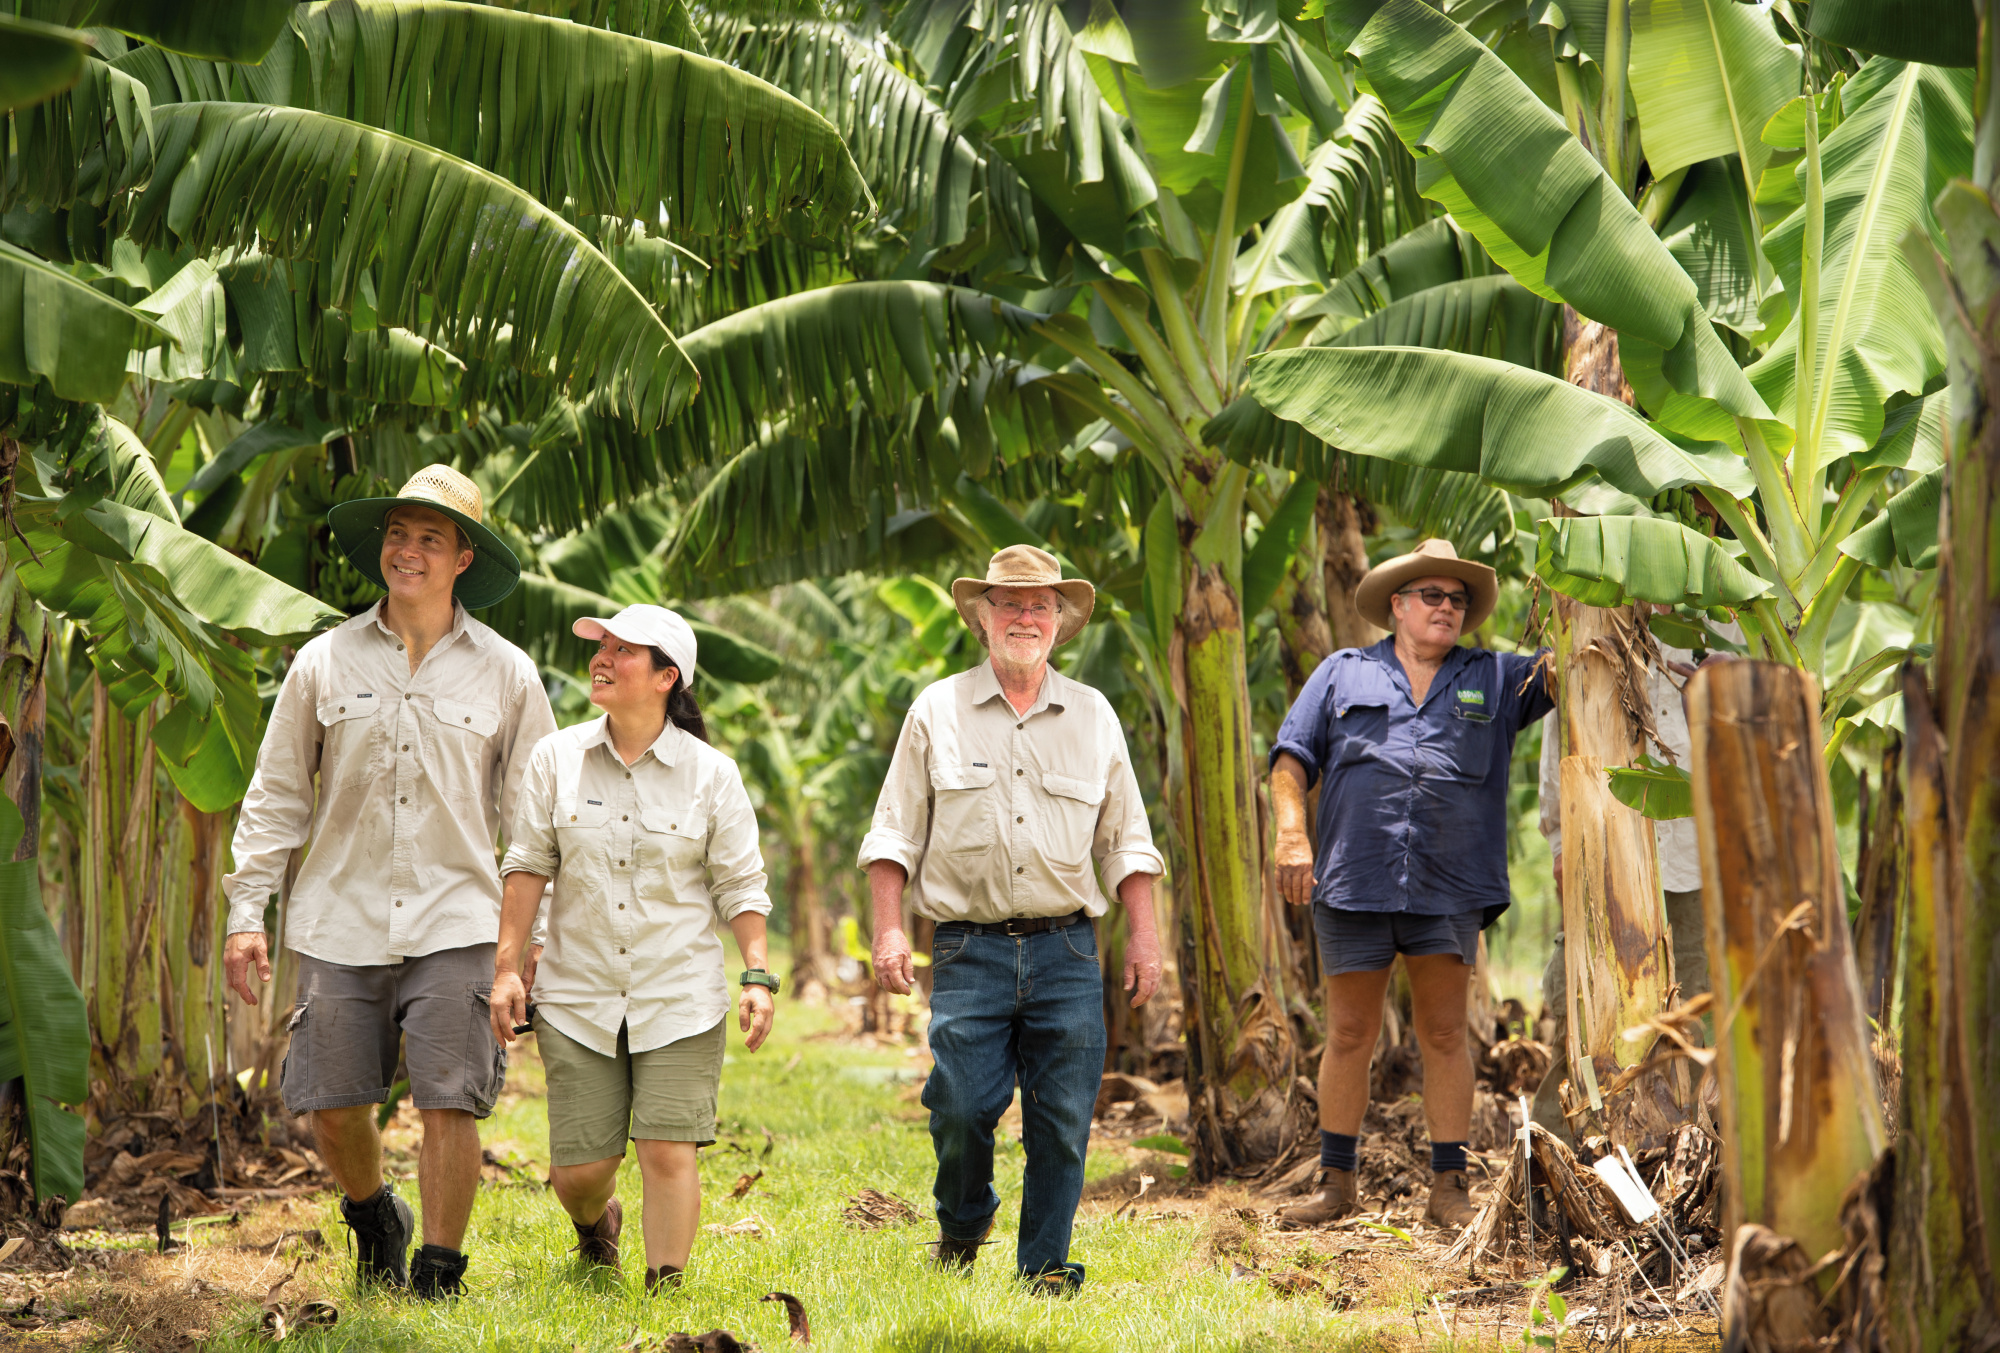 QUT El distinguido profesor James Dale y su equipo están probando la banana QCAV-4 en el sitio de prueba de campo de QUT en el Territorio del Norte. De izquierda a derecha: el Dr. Jean-Yves Paul, la Sra. Maiko Kato, el profesor Dale y el administrador de la granja, Mark Smith.